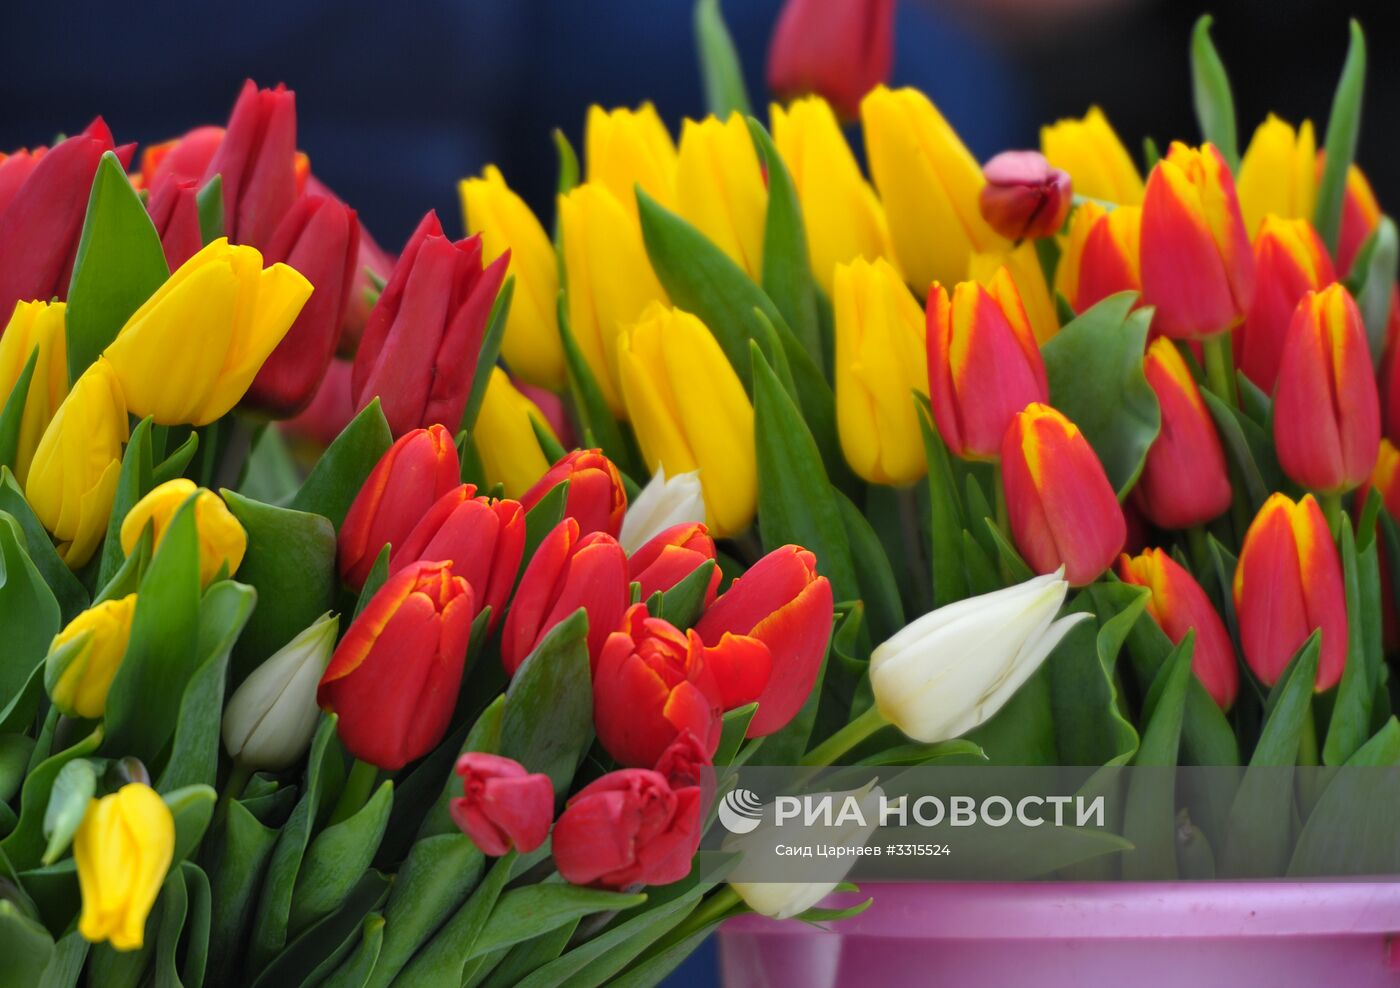 Подготовка к празднованию 8 Марта в городах России